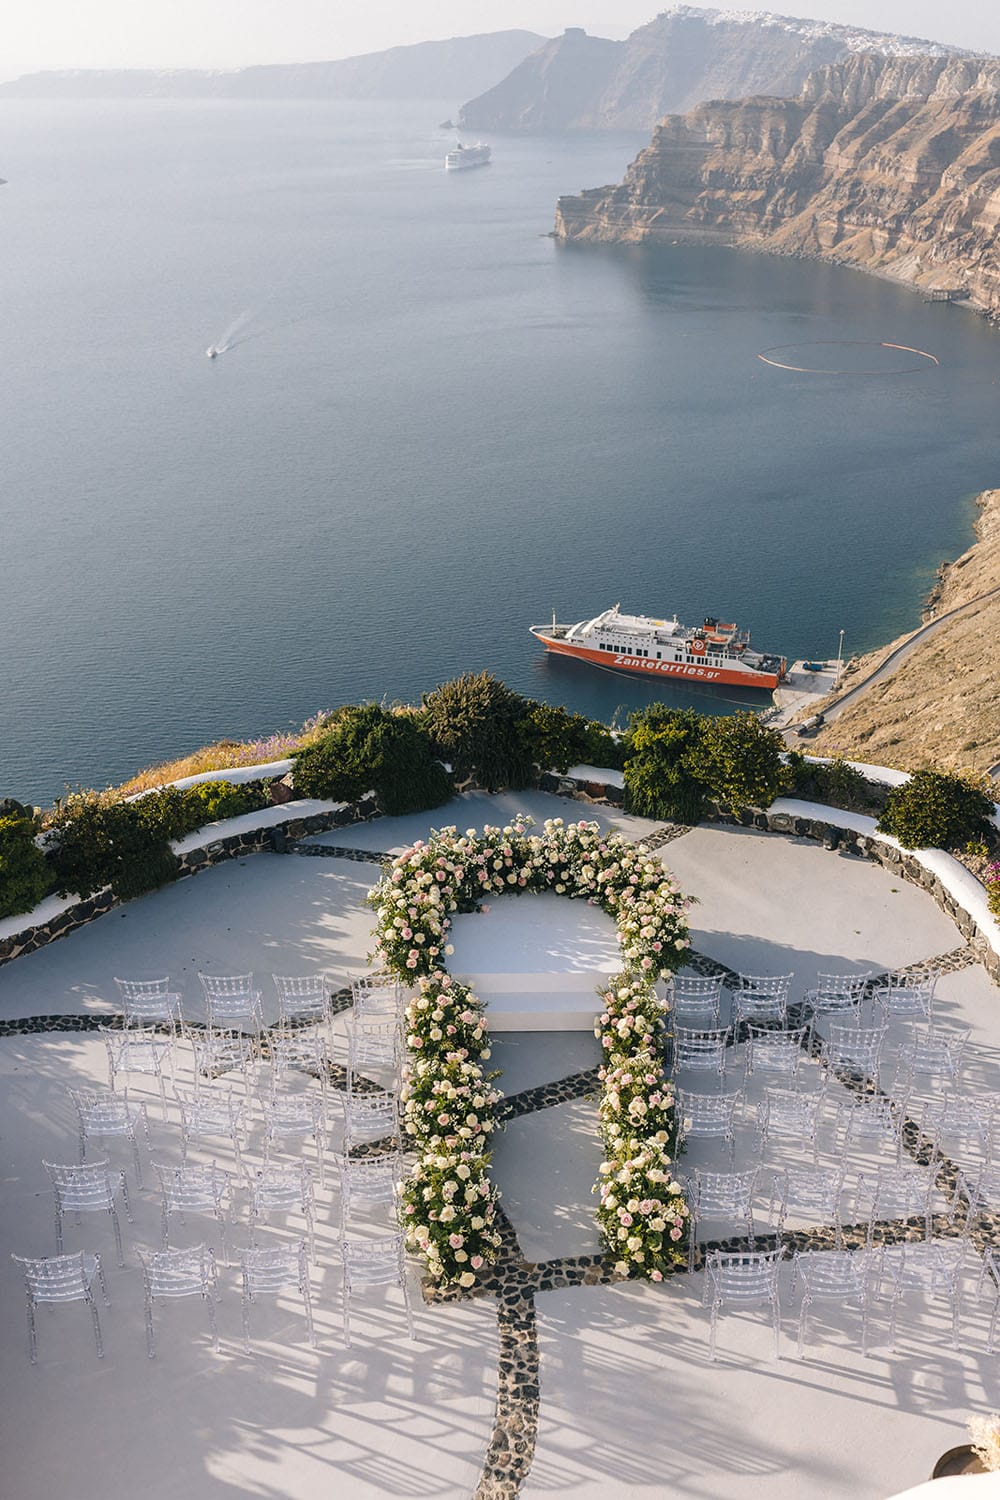 Boda de cuento de hadas en Santorini